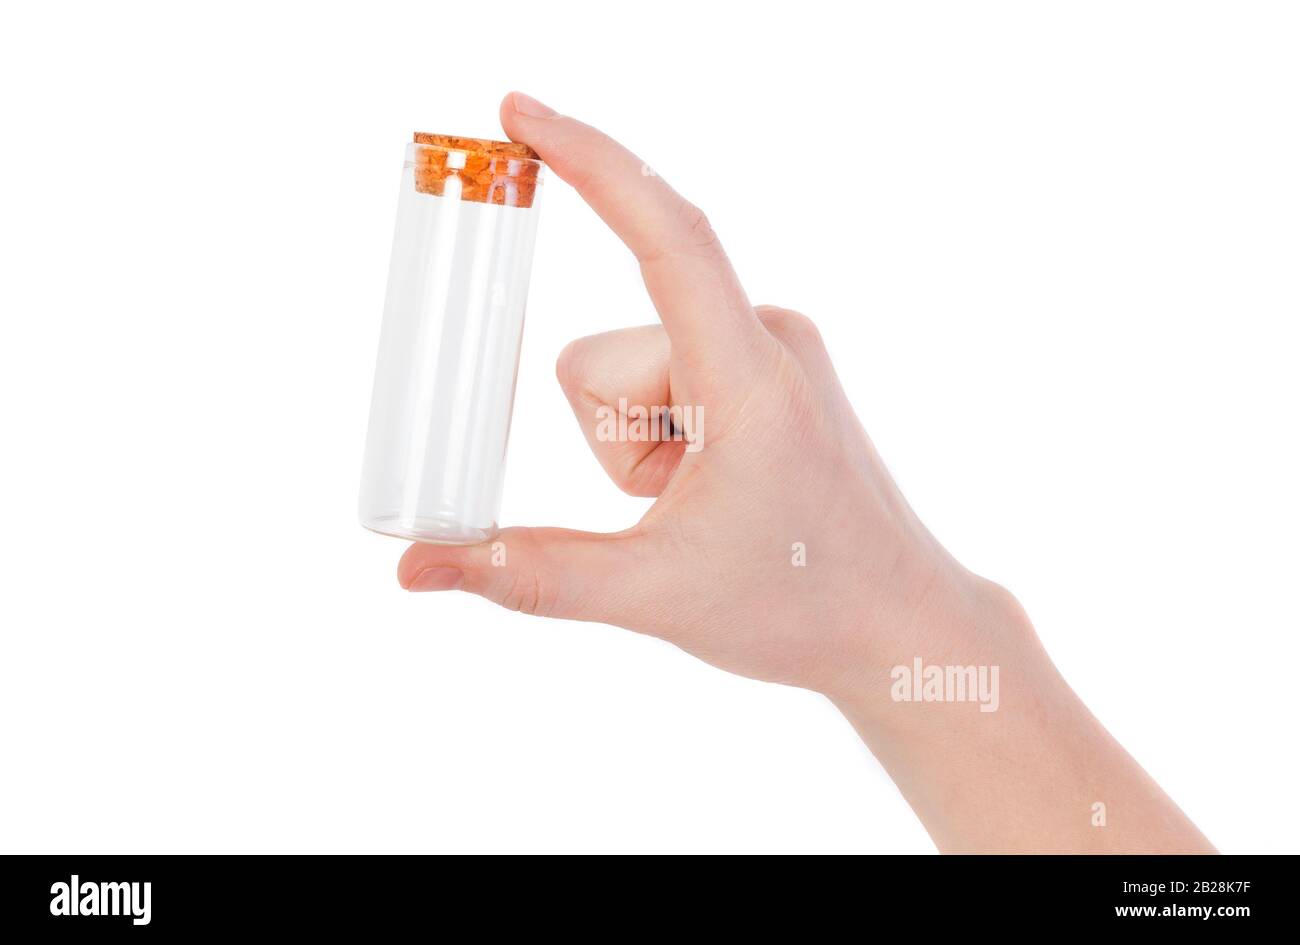 la main tenant la bouteille vide ou le tube en verre isolé sur fond blanc Banque D'Images